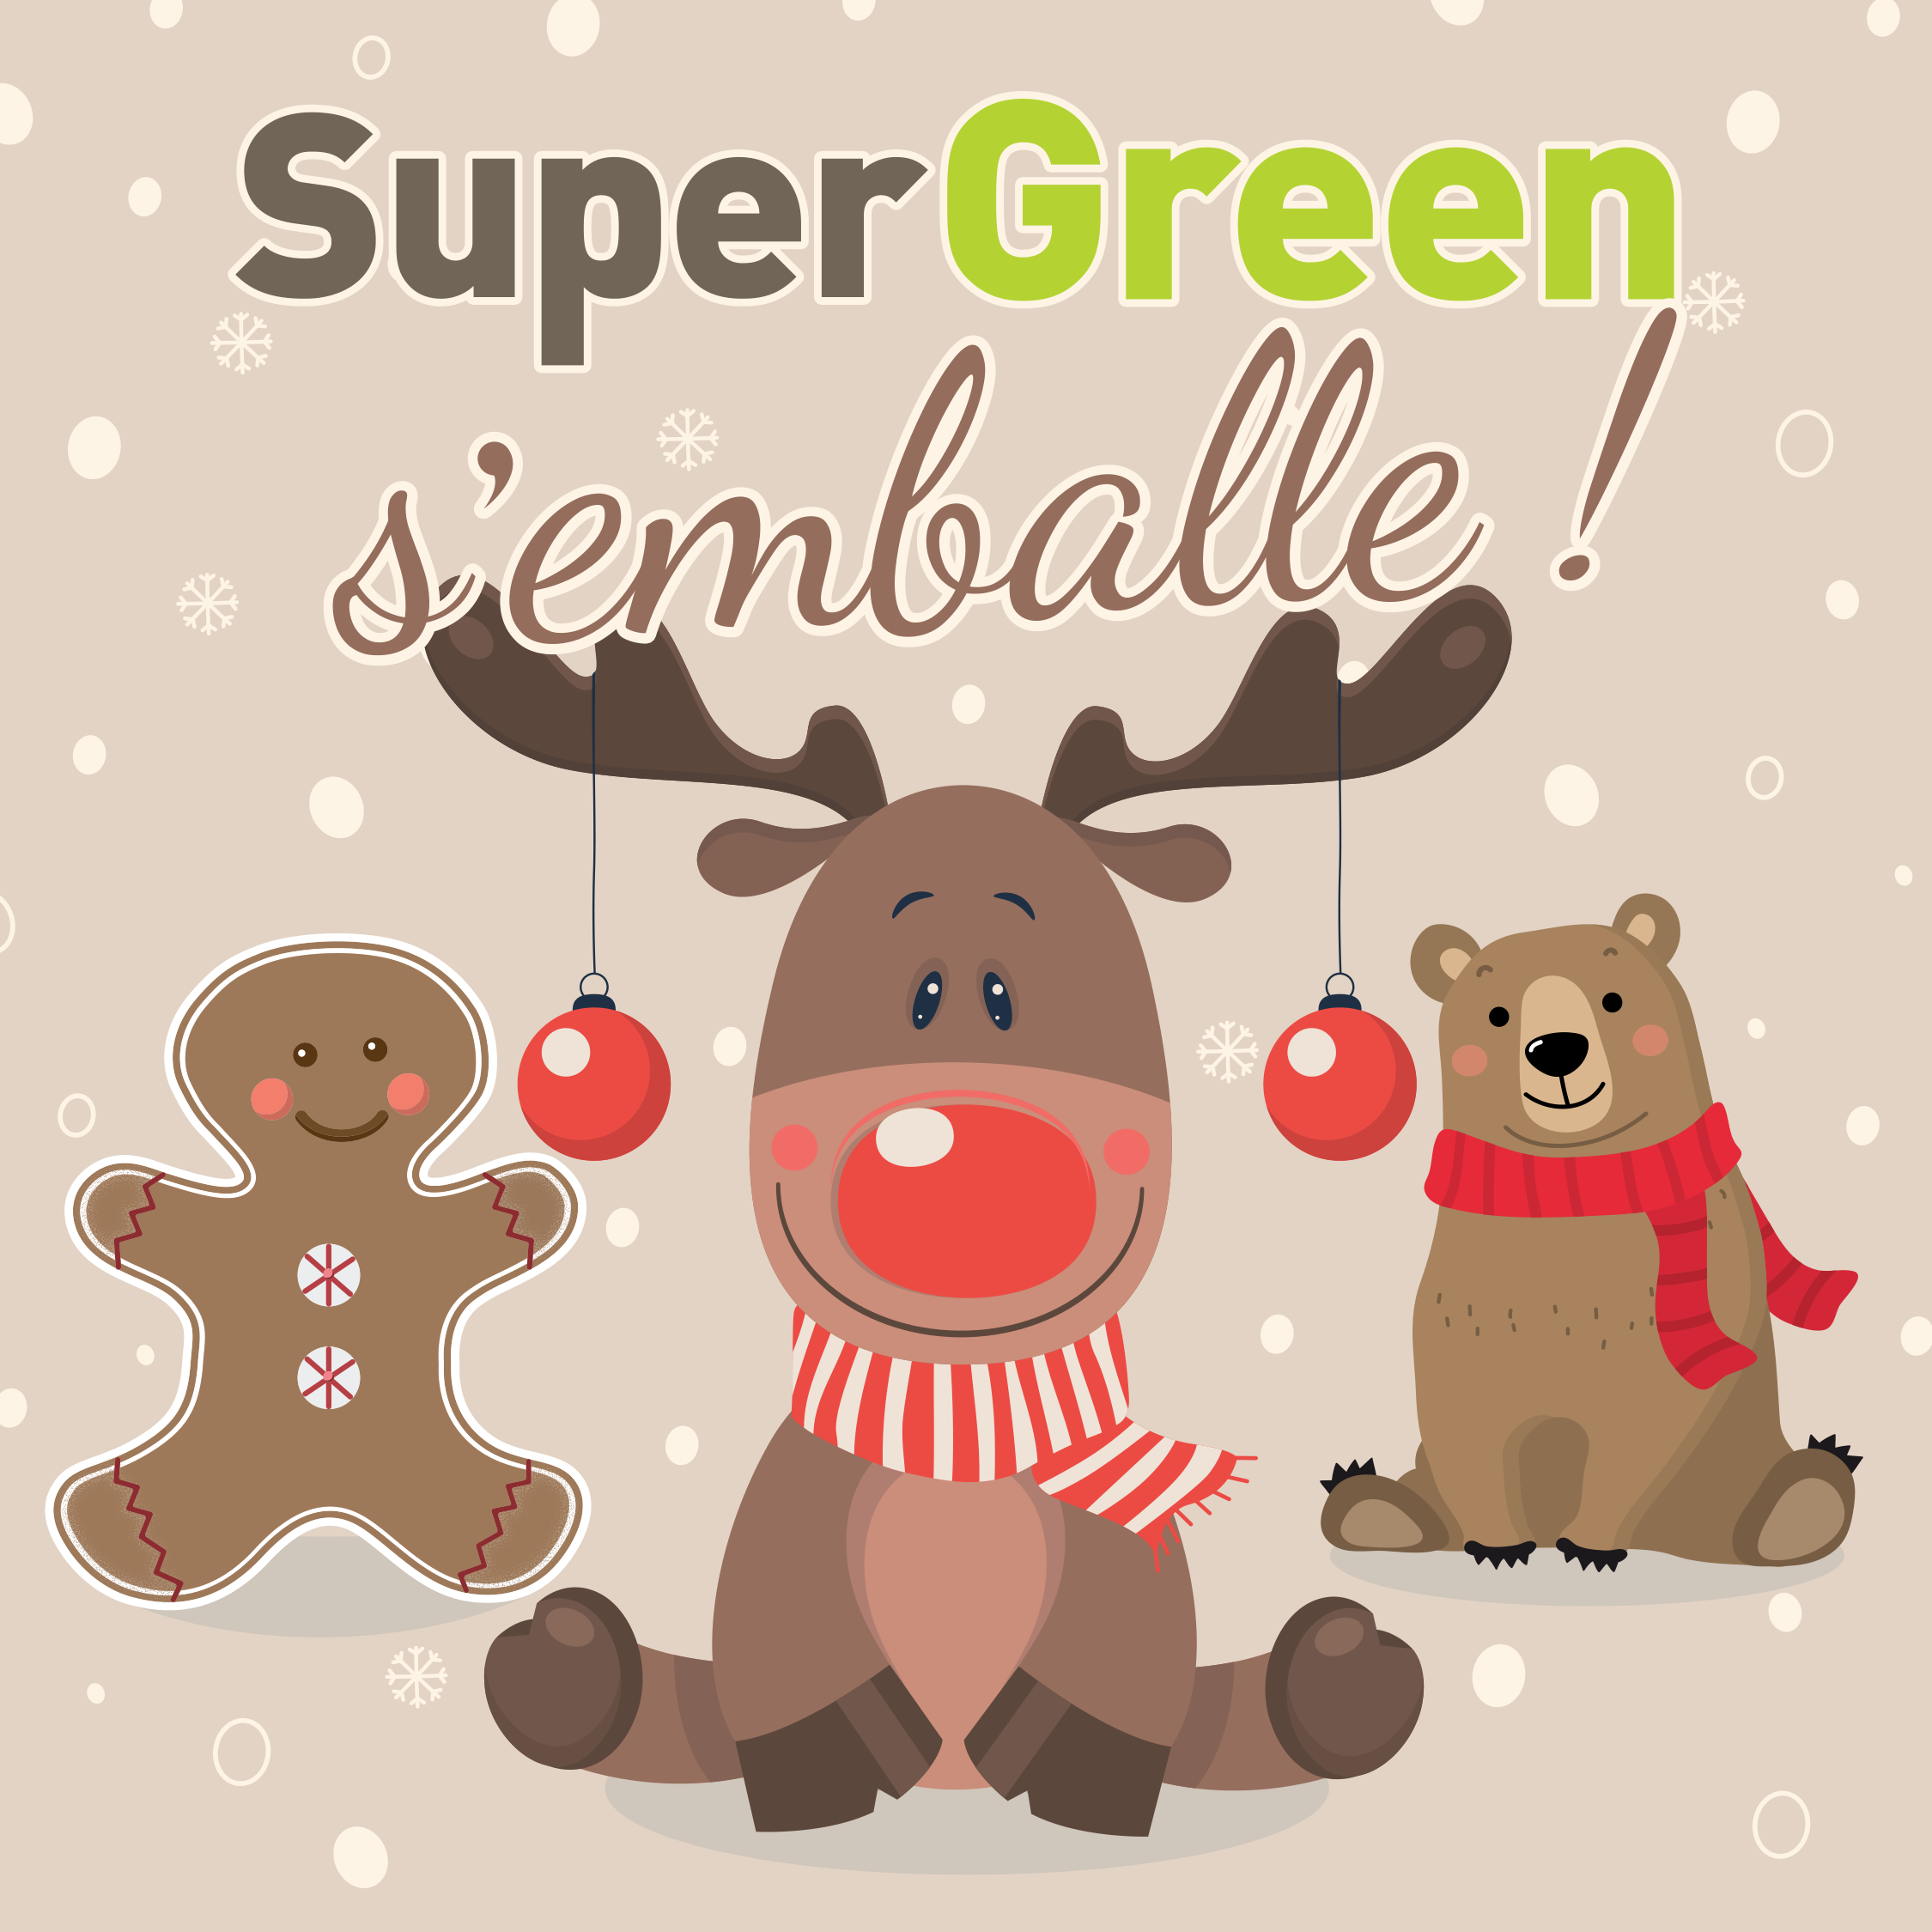 SuperGreen Terville - - instagram noel 2023 supergreen 1080x1080 1 1 - 1